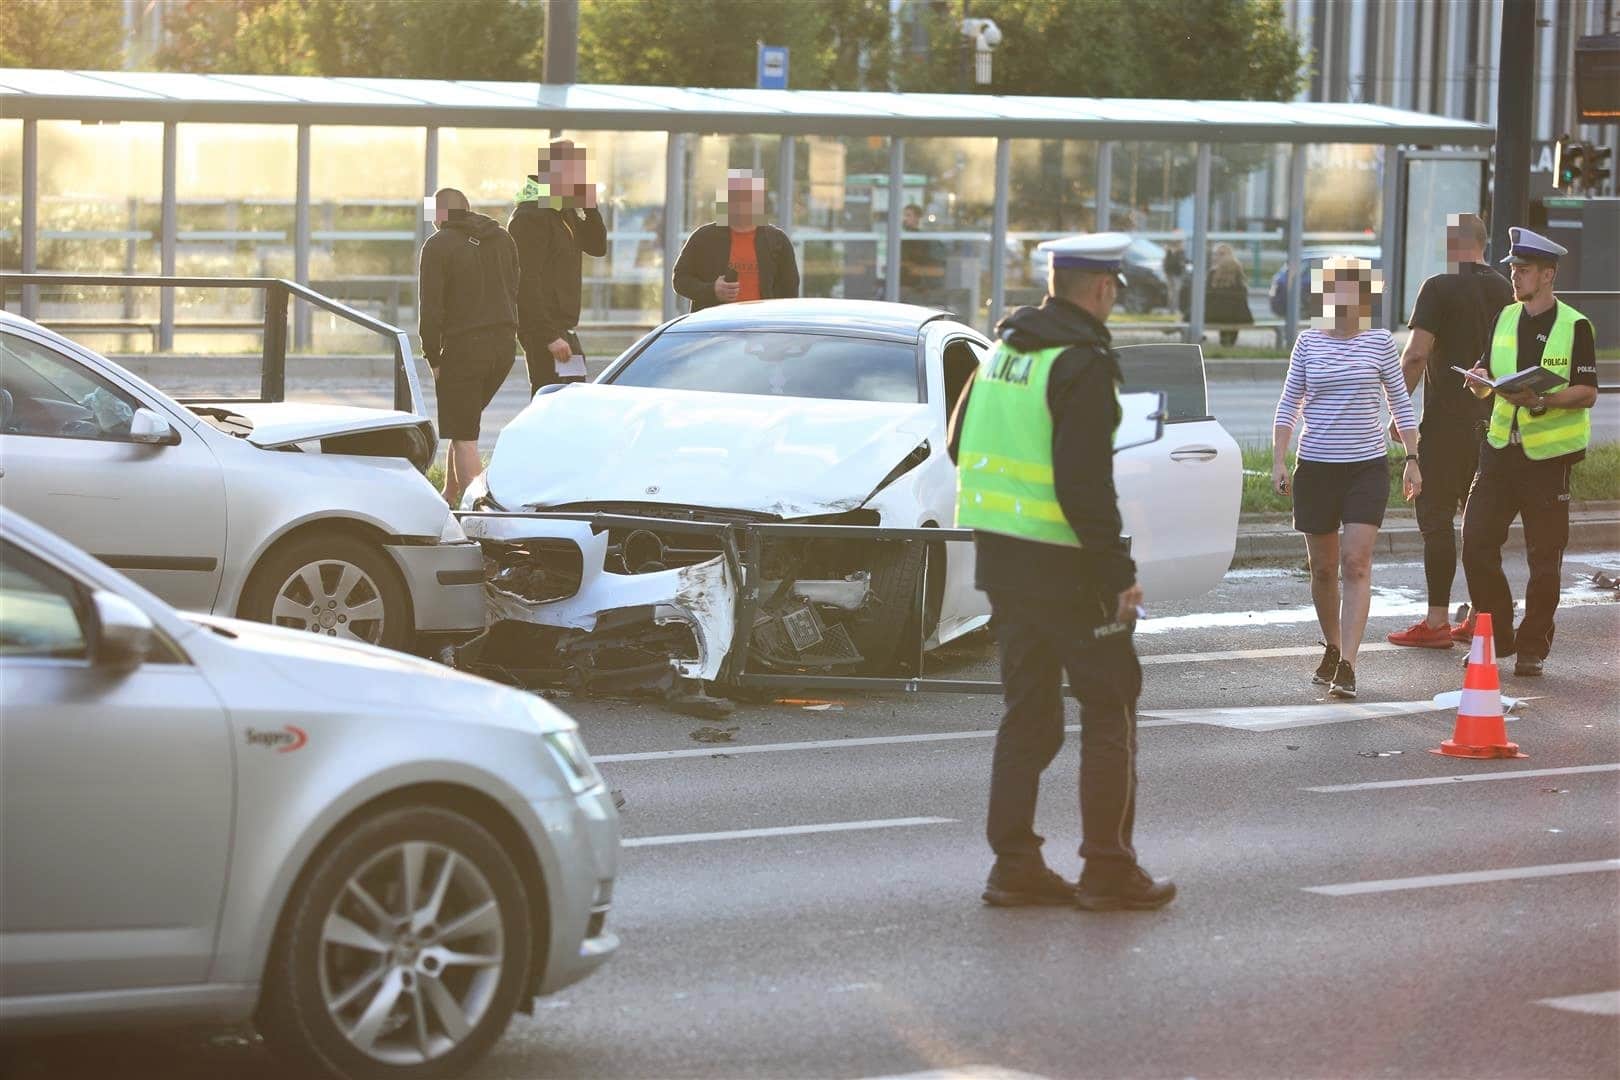 Driftował pod Galerią Warmińską? 22-letni kierowca Mercedesa stracił "prawko" wypadek Olsztyn, Wiadomości, Wideo